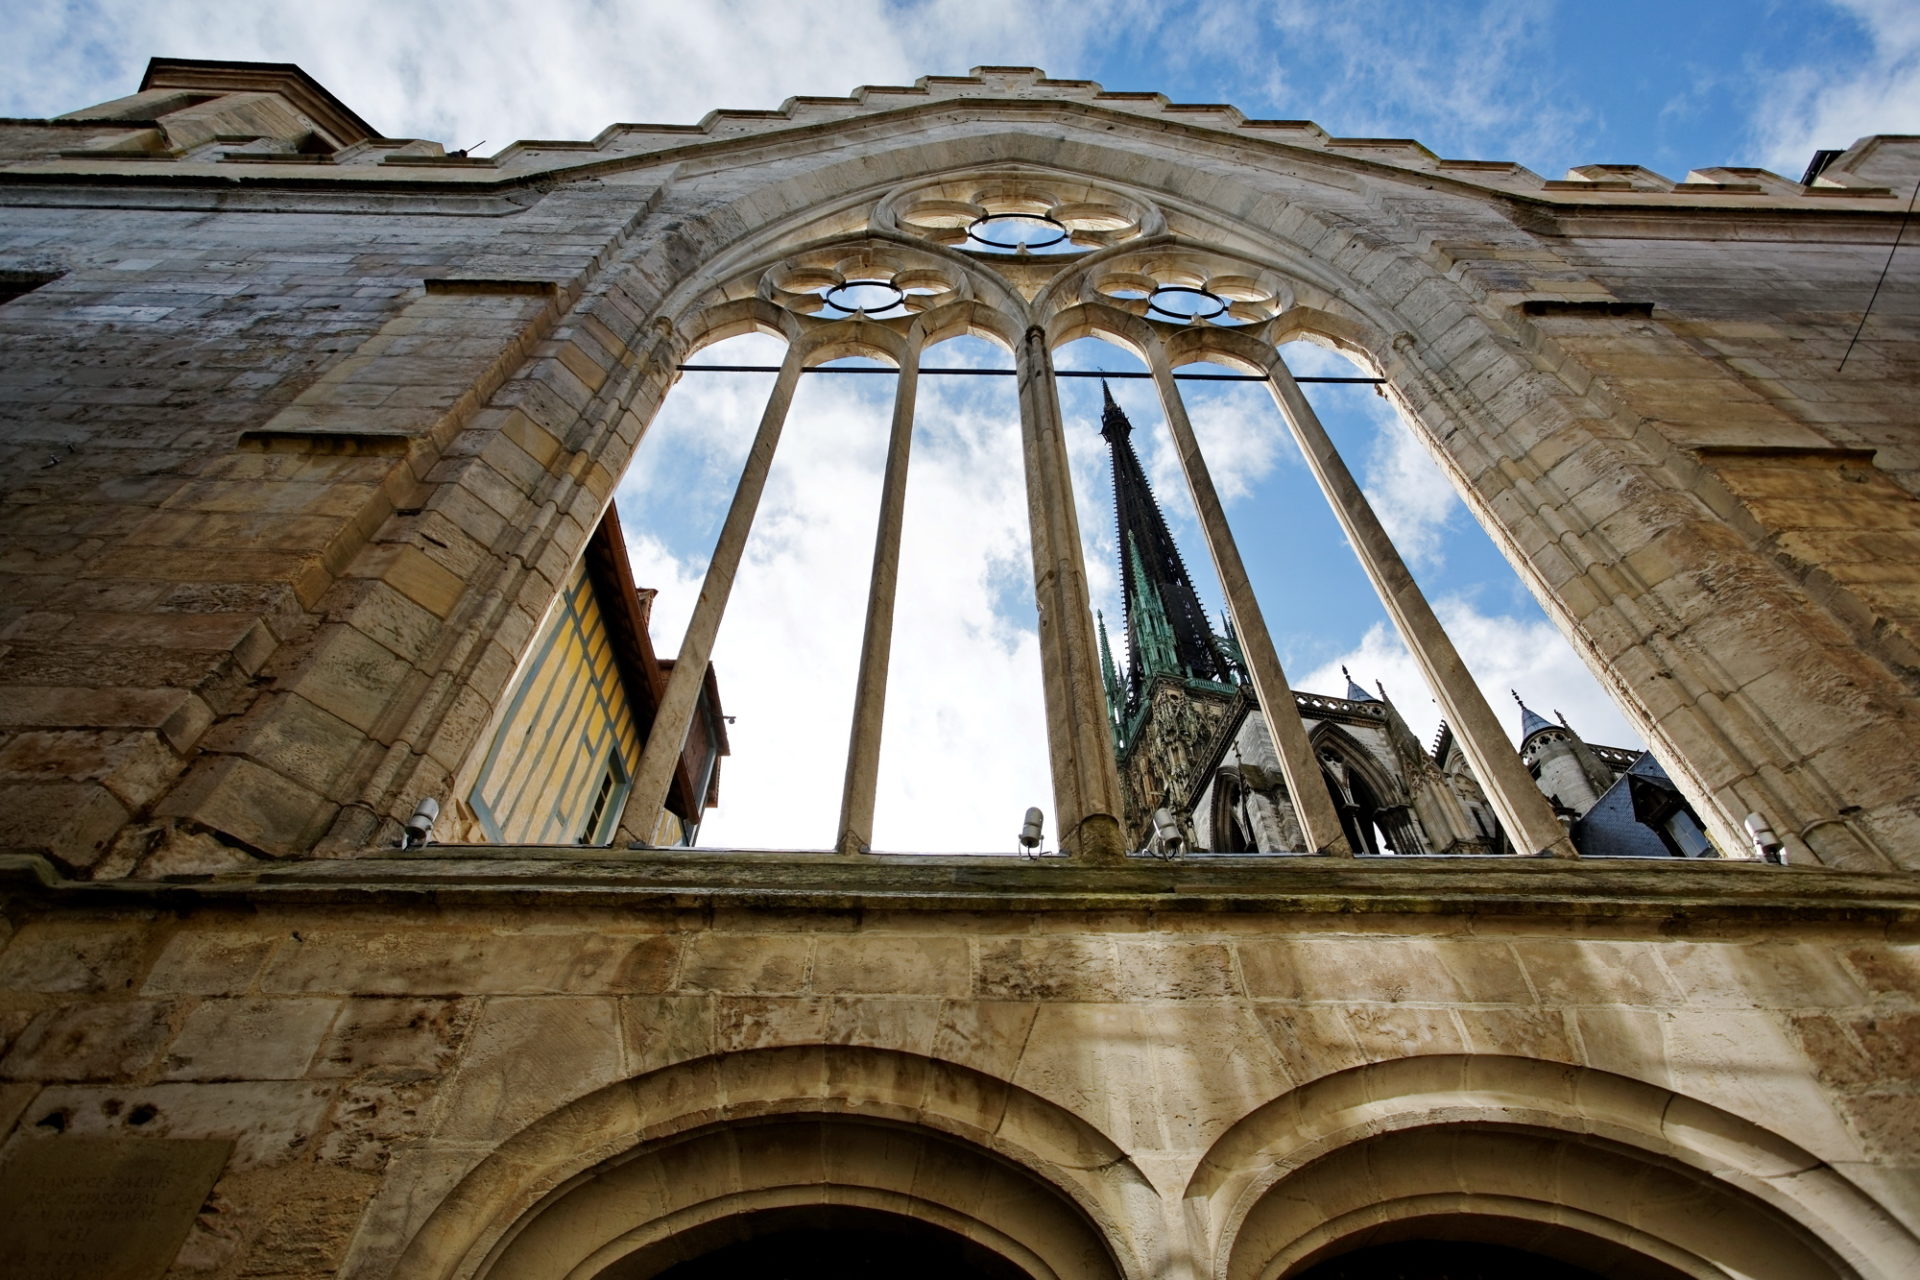 Photo prise de la coure de l Historial Jeanne d Arc en contre plongé avec la nef de la cathédrale apparaissant derrière l'arche de l'historial